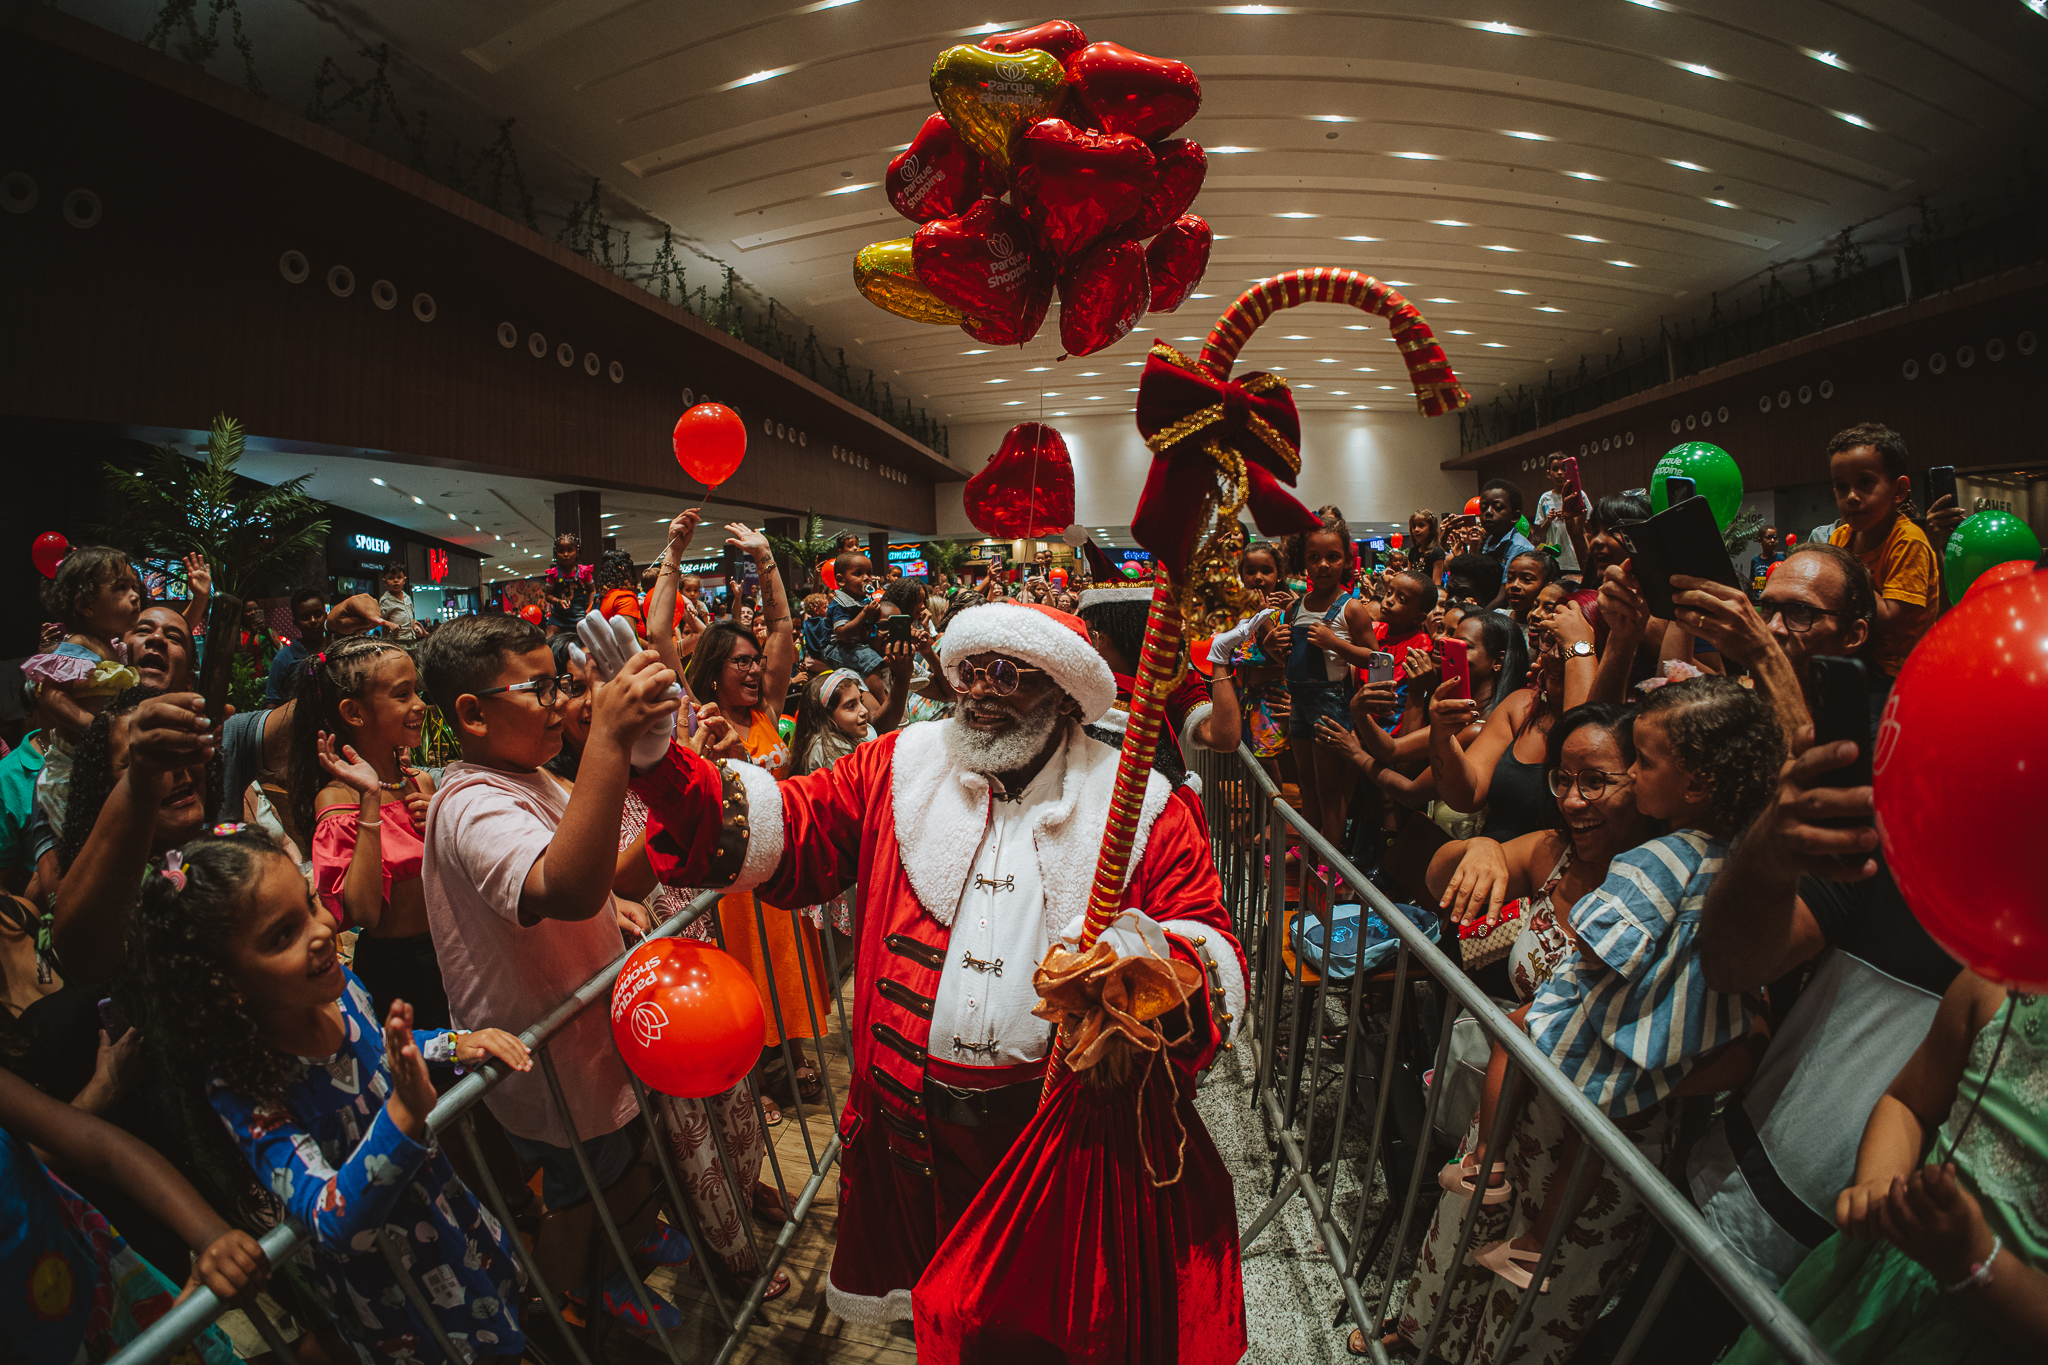 Acompanhado da Galinha Pintadinha, Papai Noel chega ao Parque Shopping (Valter Júnior)